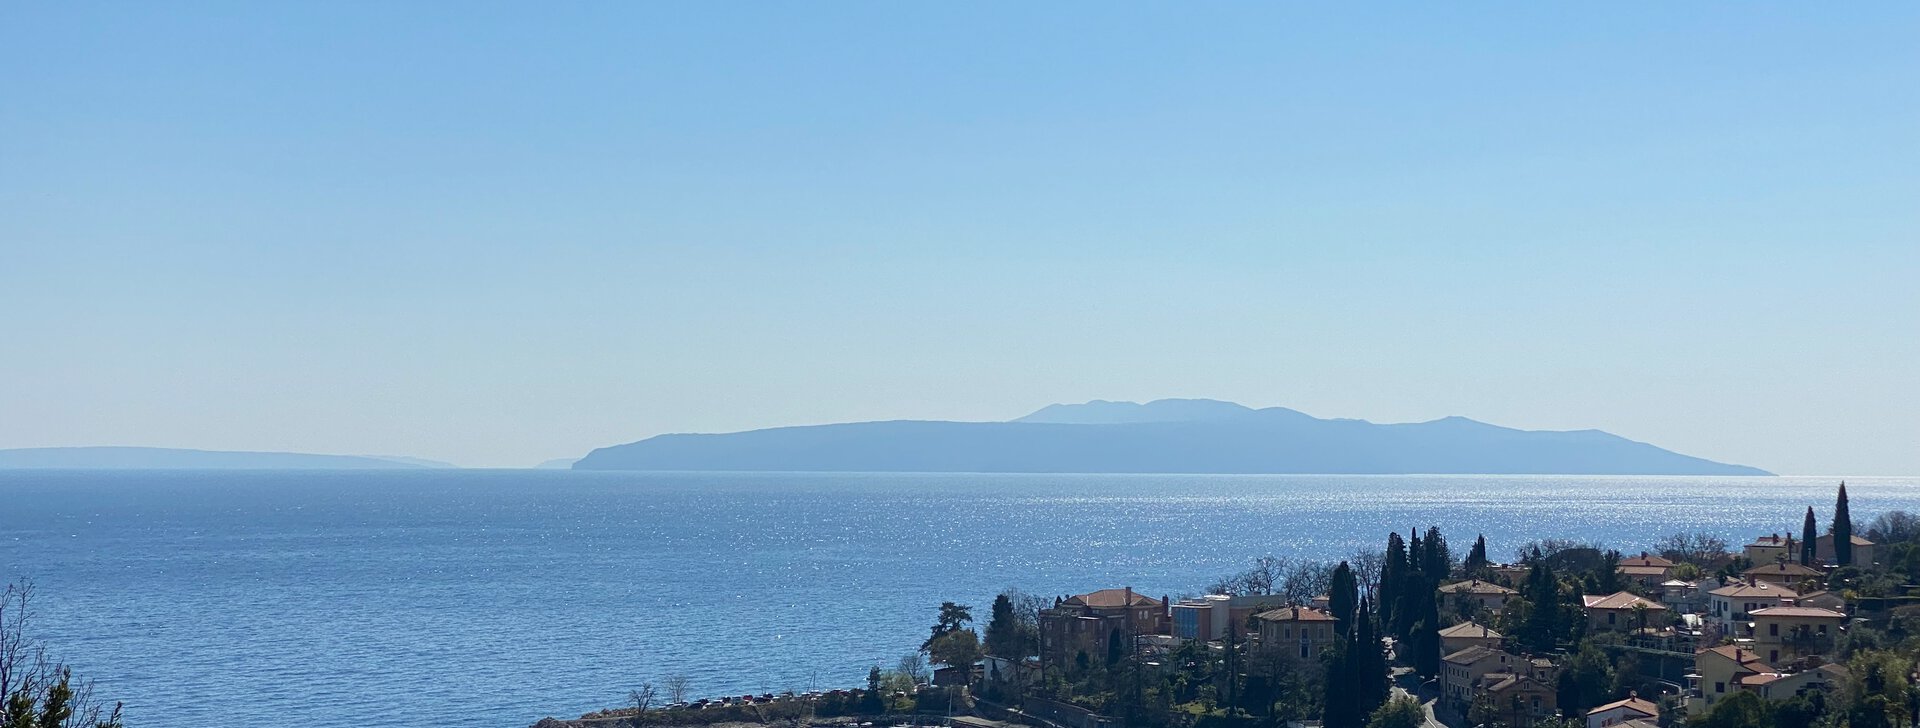 Ausblick aufs Meer, Traumhafte und großzügige Wohnung mit Blick aufs Meer in Kroatien, Immobilie kaufen, Ičići-Kroatien | © HausBauHaus GmbH